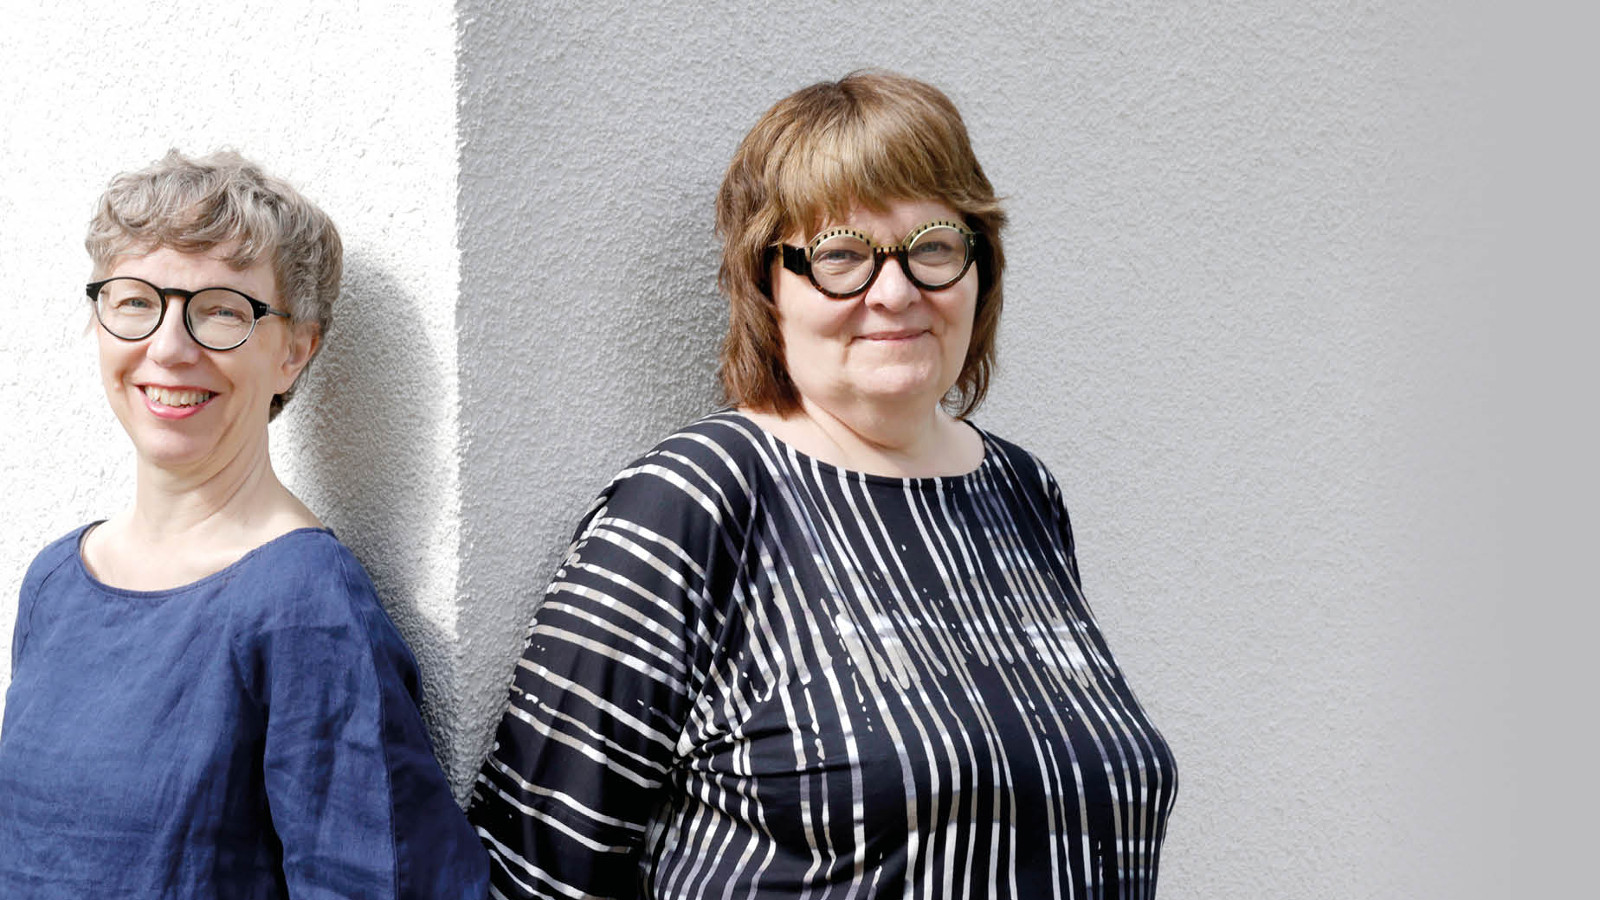 Kuvassa ovat Jaana Semeri sinisessä puserossa ja Leena Virtanen musta-valkoraidallisessa puserossa.  He nojaavat seinään ja välissä on vaalean seinän pieni kulma.